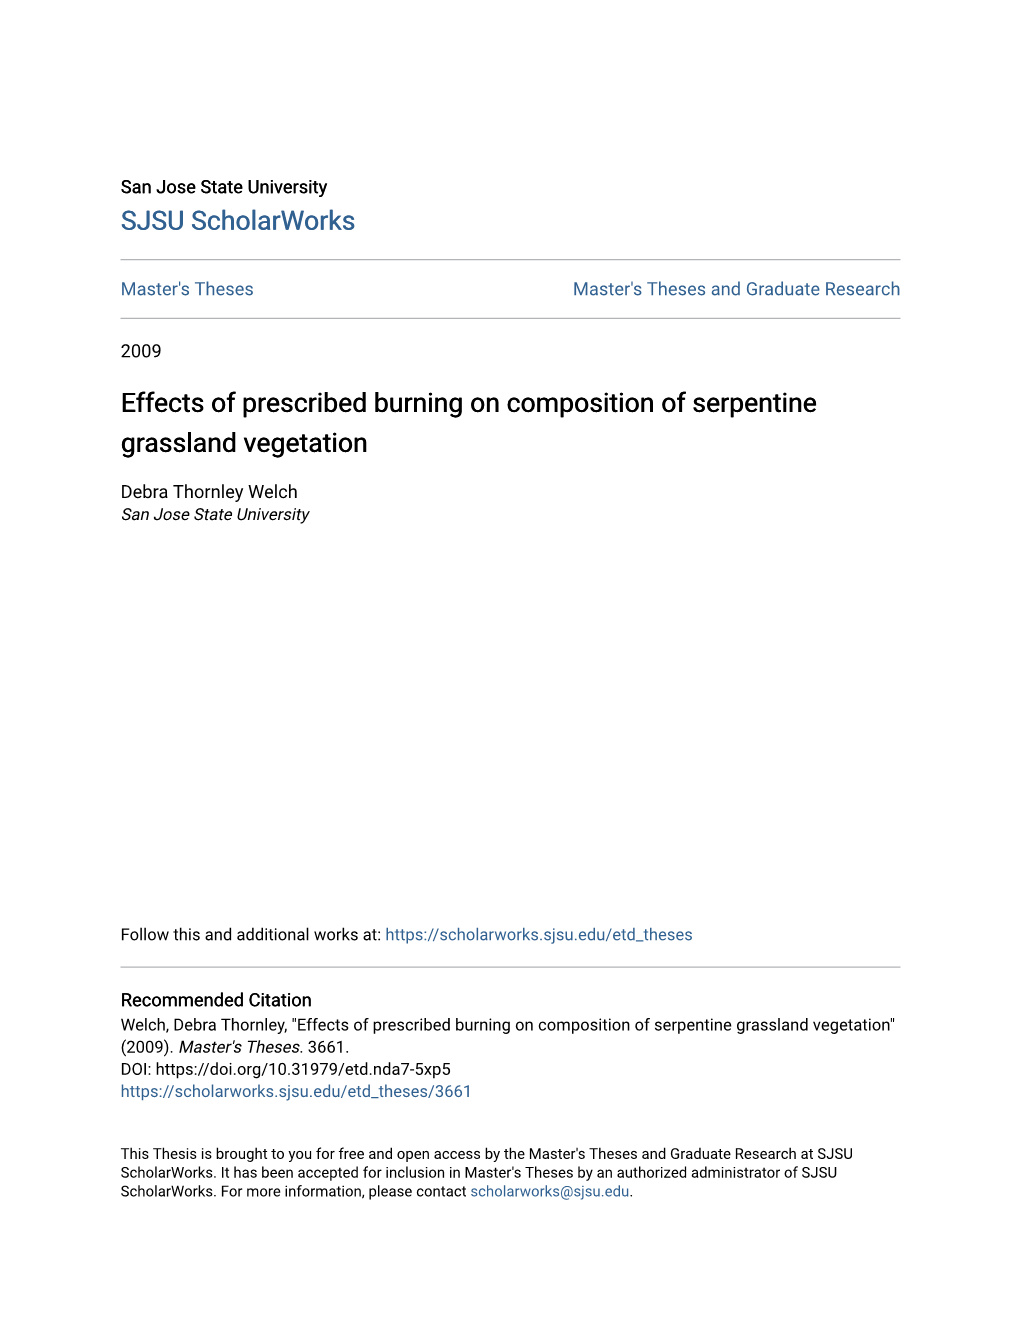 Effects of Prescribed Burning on Composition of Serpentine Grassland Vegetation